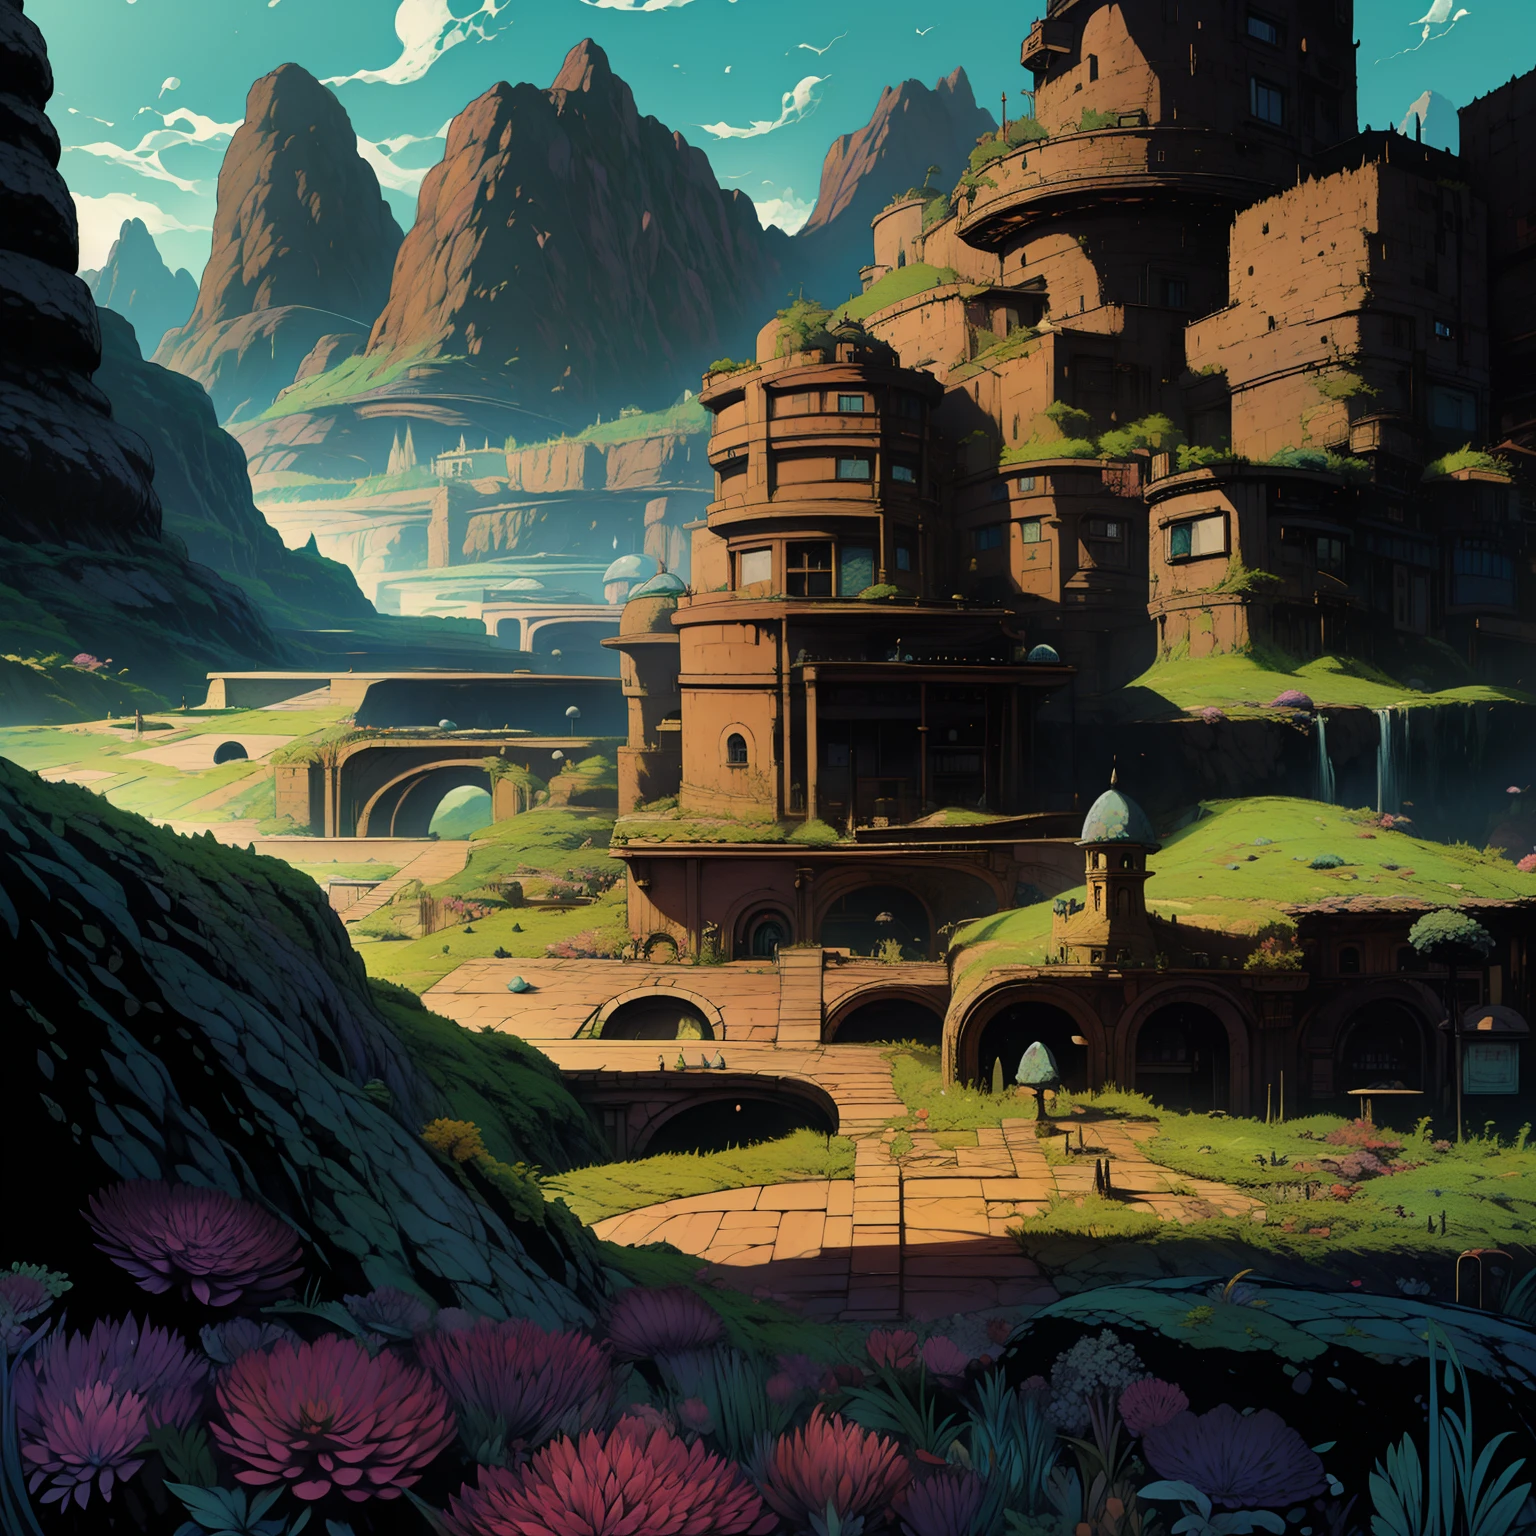 Ghibli, no humanos, castillos, cascada, islas voladoras, montañas ferrofluidos, arte lineal, paisaje, ilustración, alta calidad, mejor calidad, (alto detallado:1.2), (extremadamente detallado:1.3)